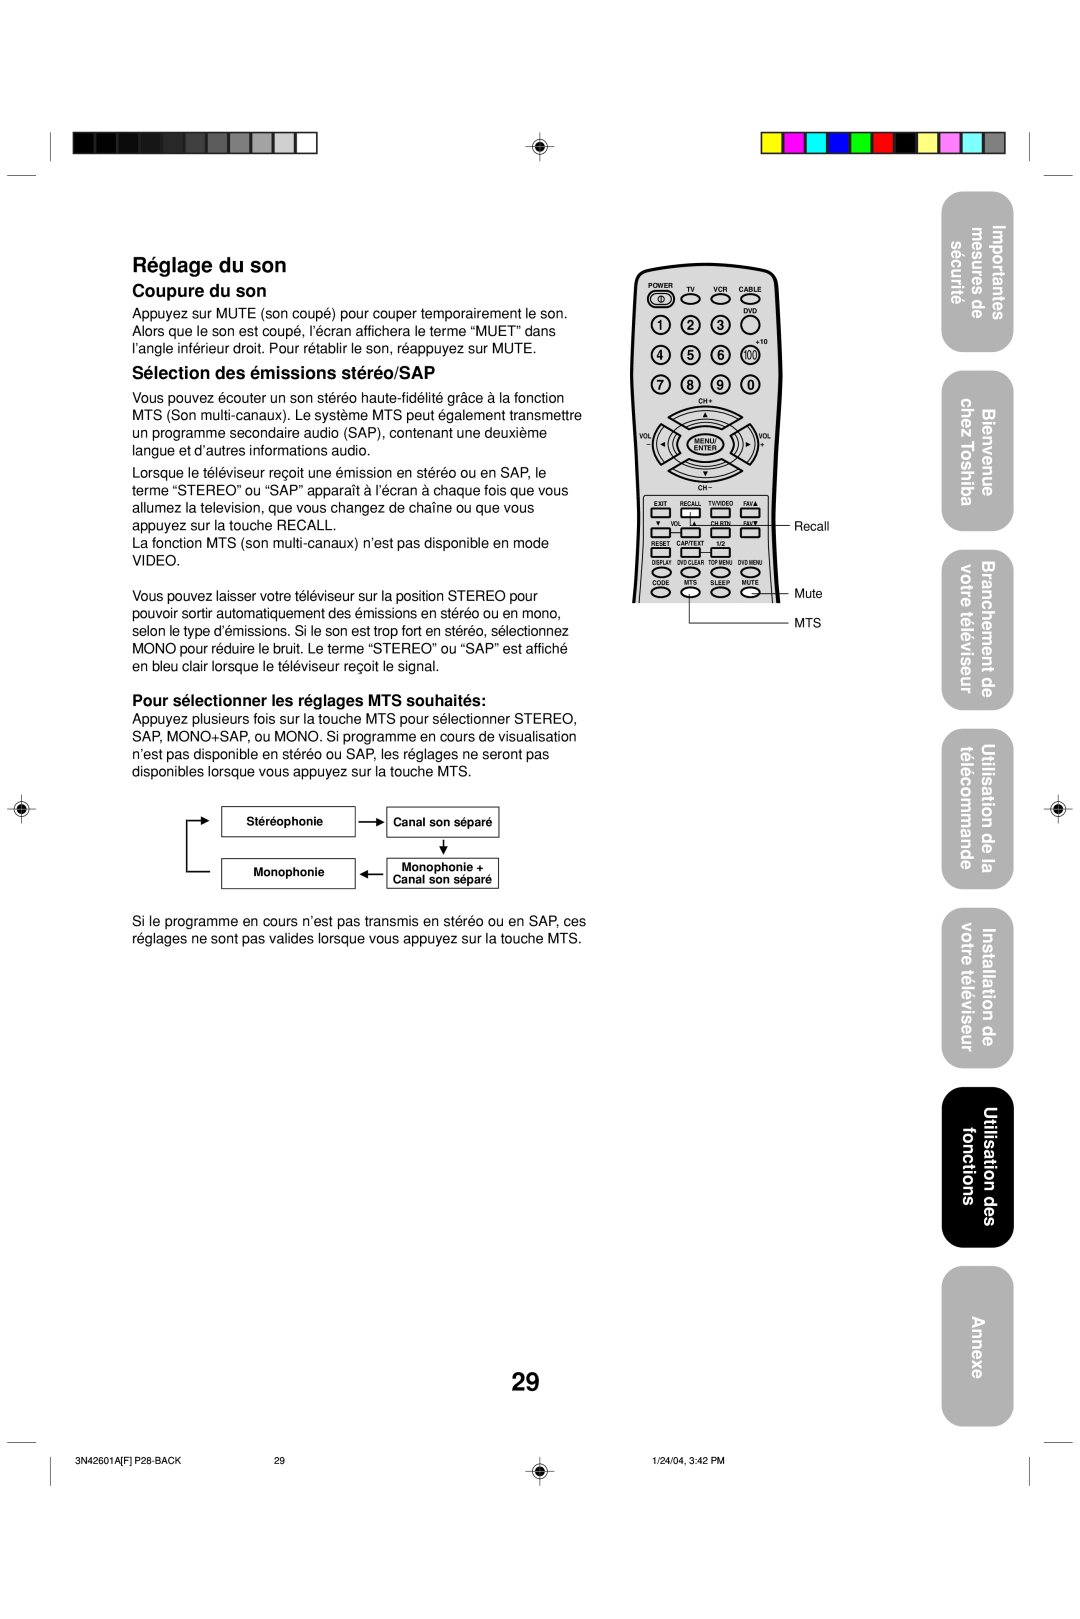 Toshiba 27A44 appendix Réglage du son, Coupure du son, Sélection des émissions stéréo/SAP, Annexe 